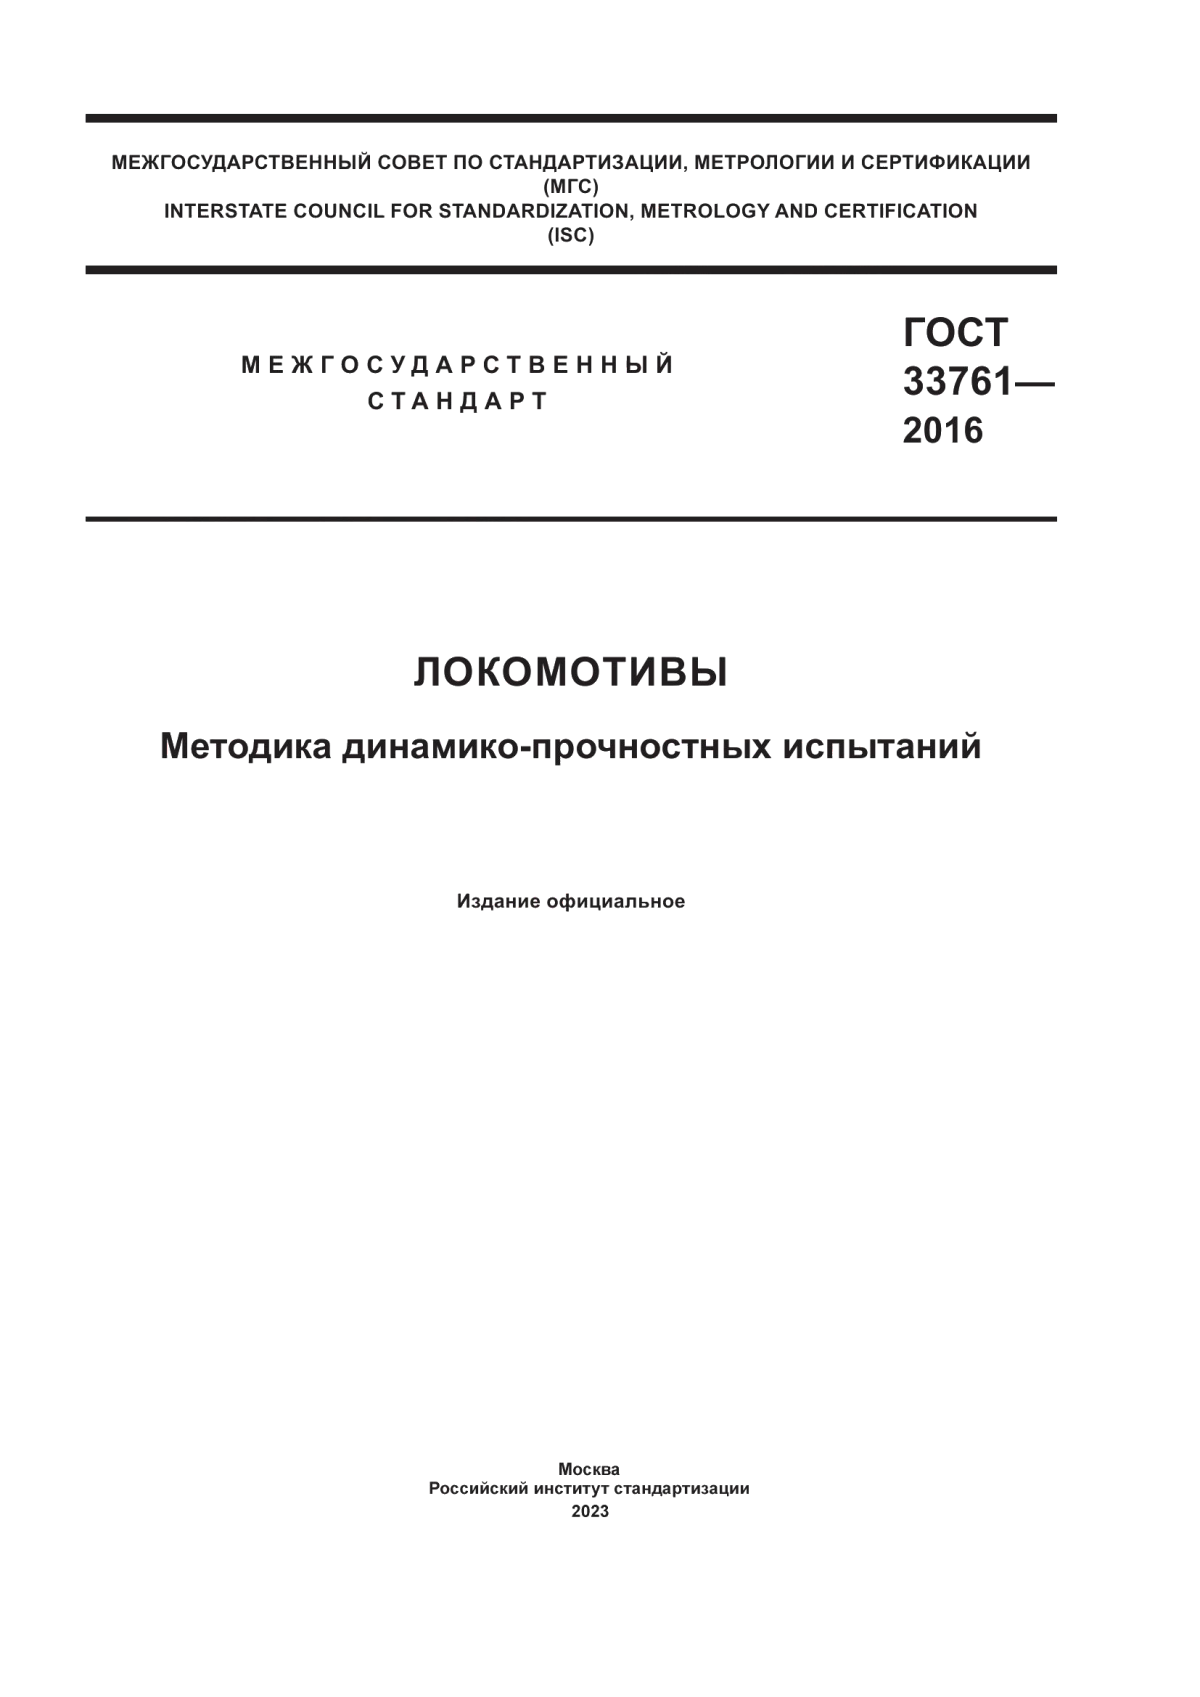 ГОСТ 33761-2016 Локомотивы. Методика динамико-прочностных испытаний